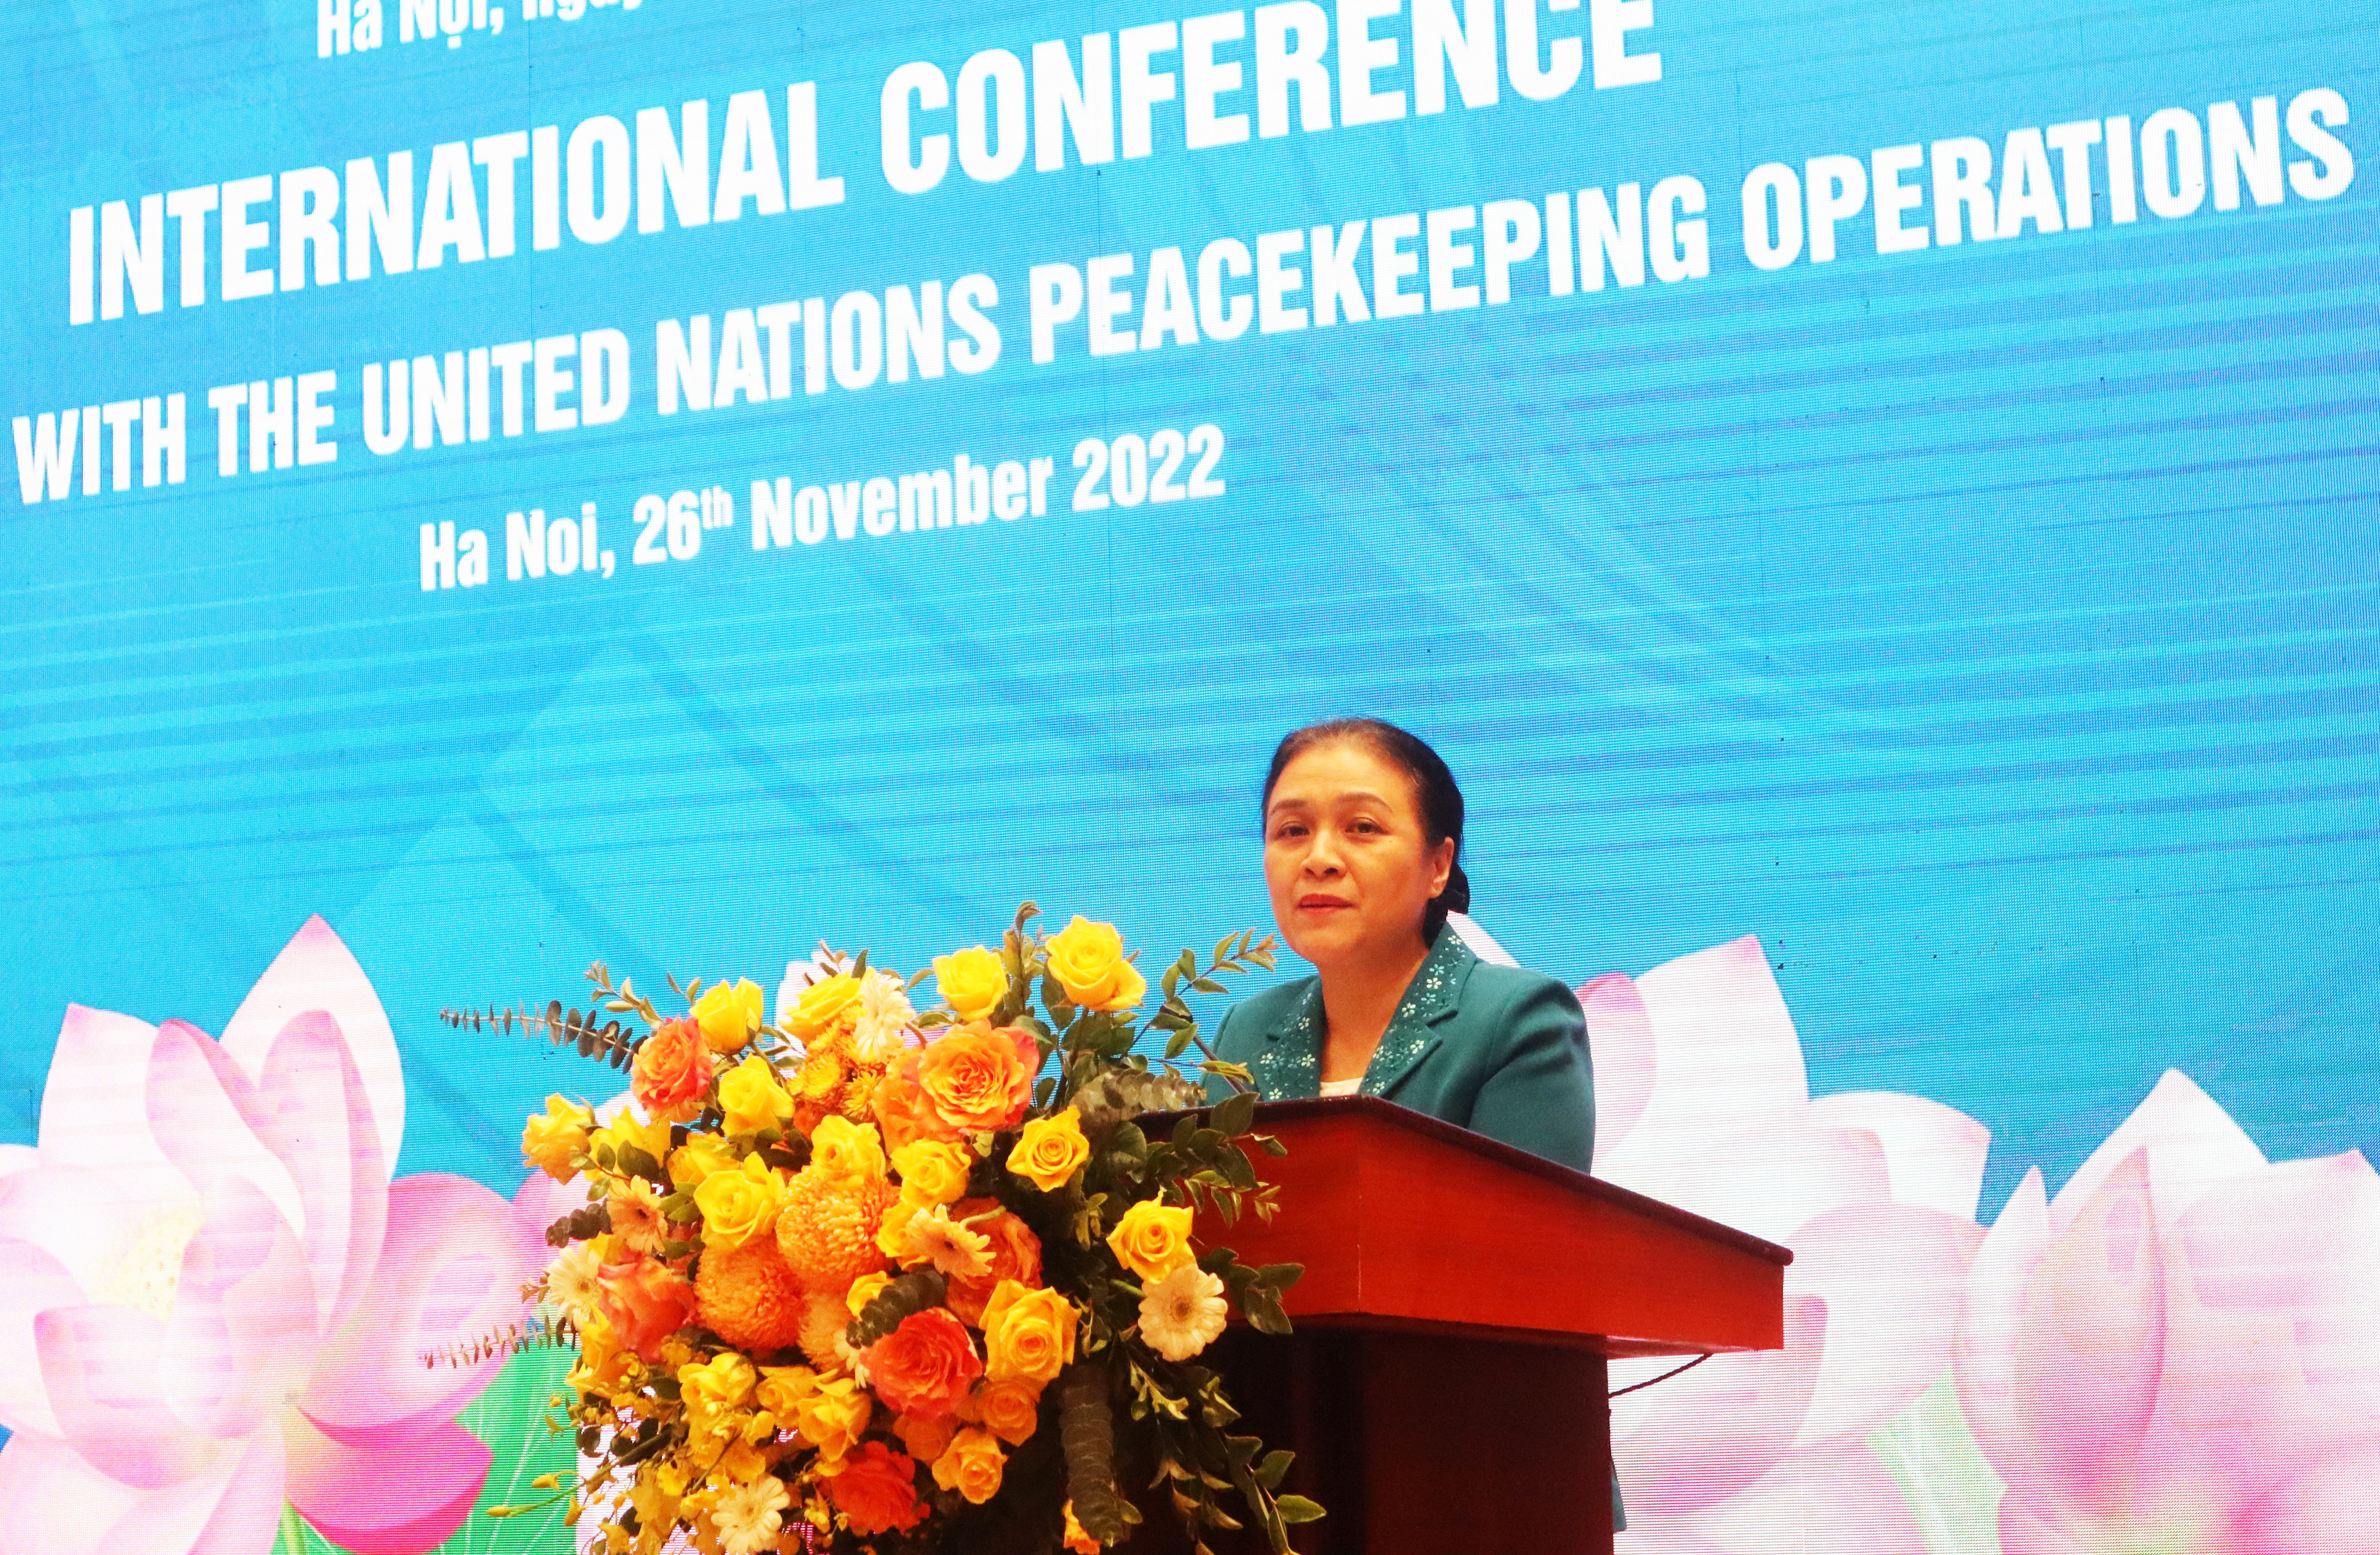 Thúc đẩy sự tham gia bền vững của phụ nữ trong sứ mệnh gìn giữ hòa bình Liên hợp quốc